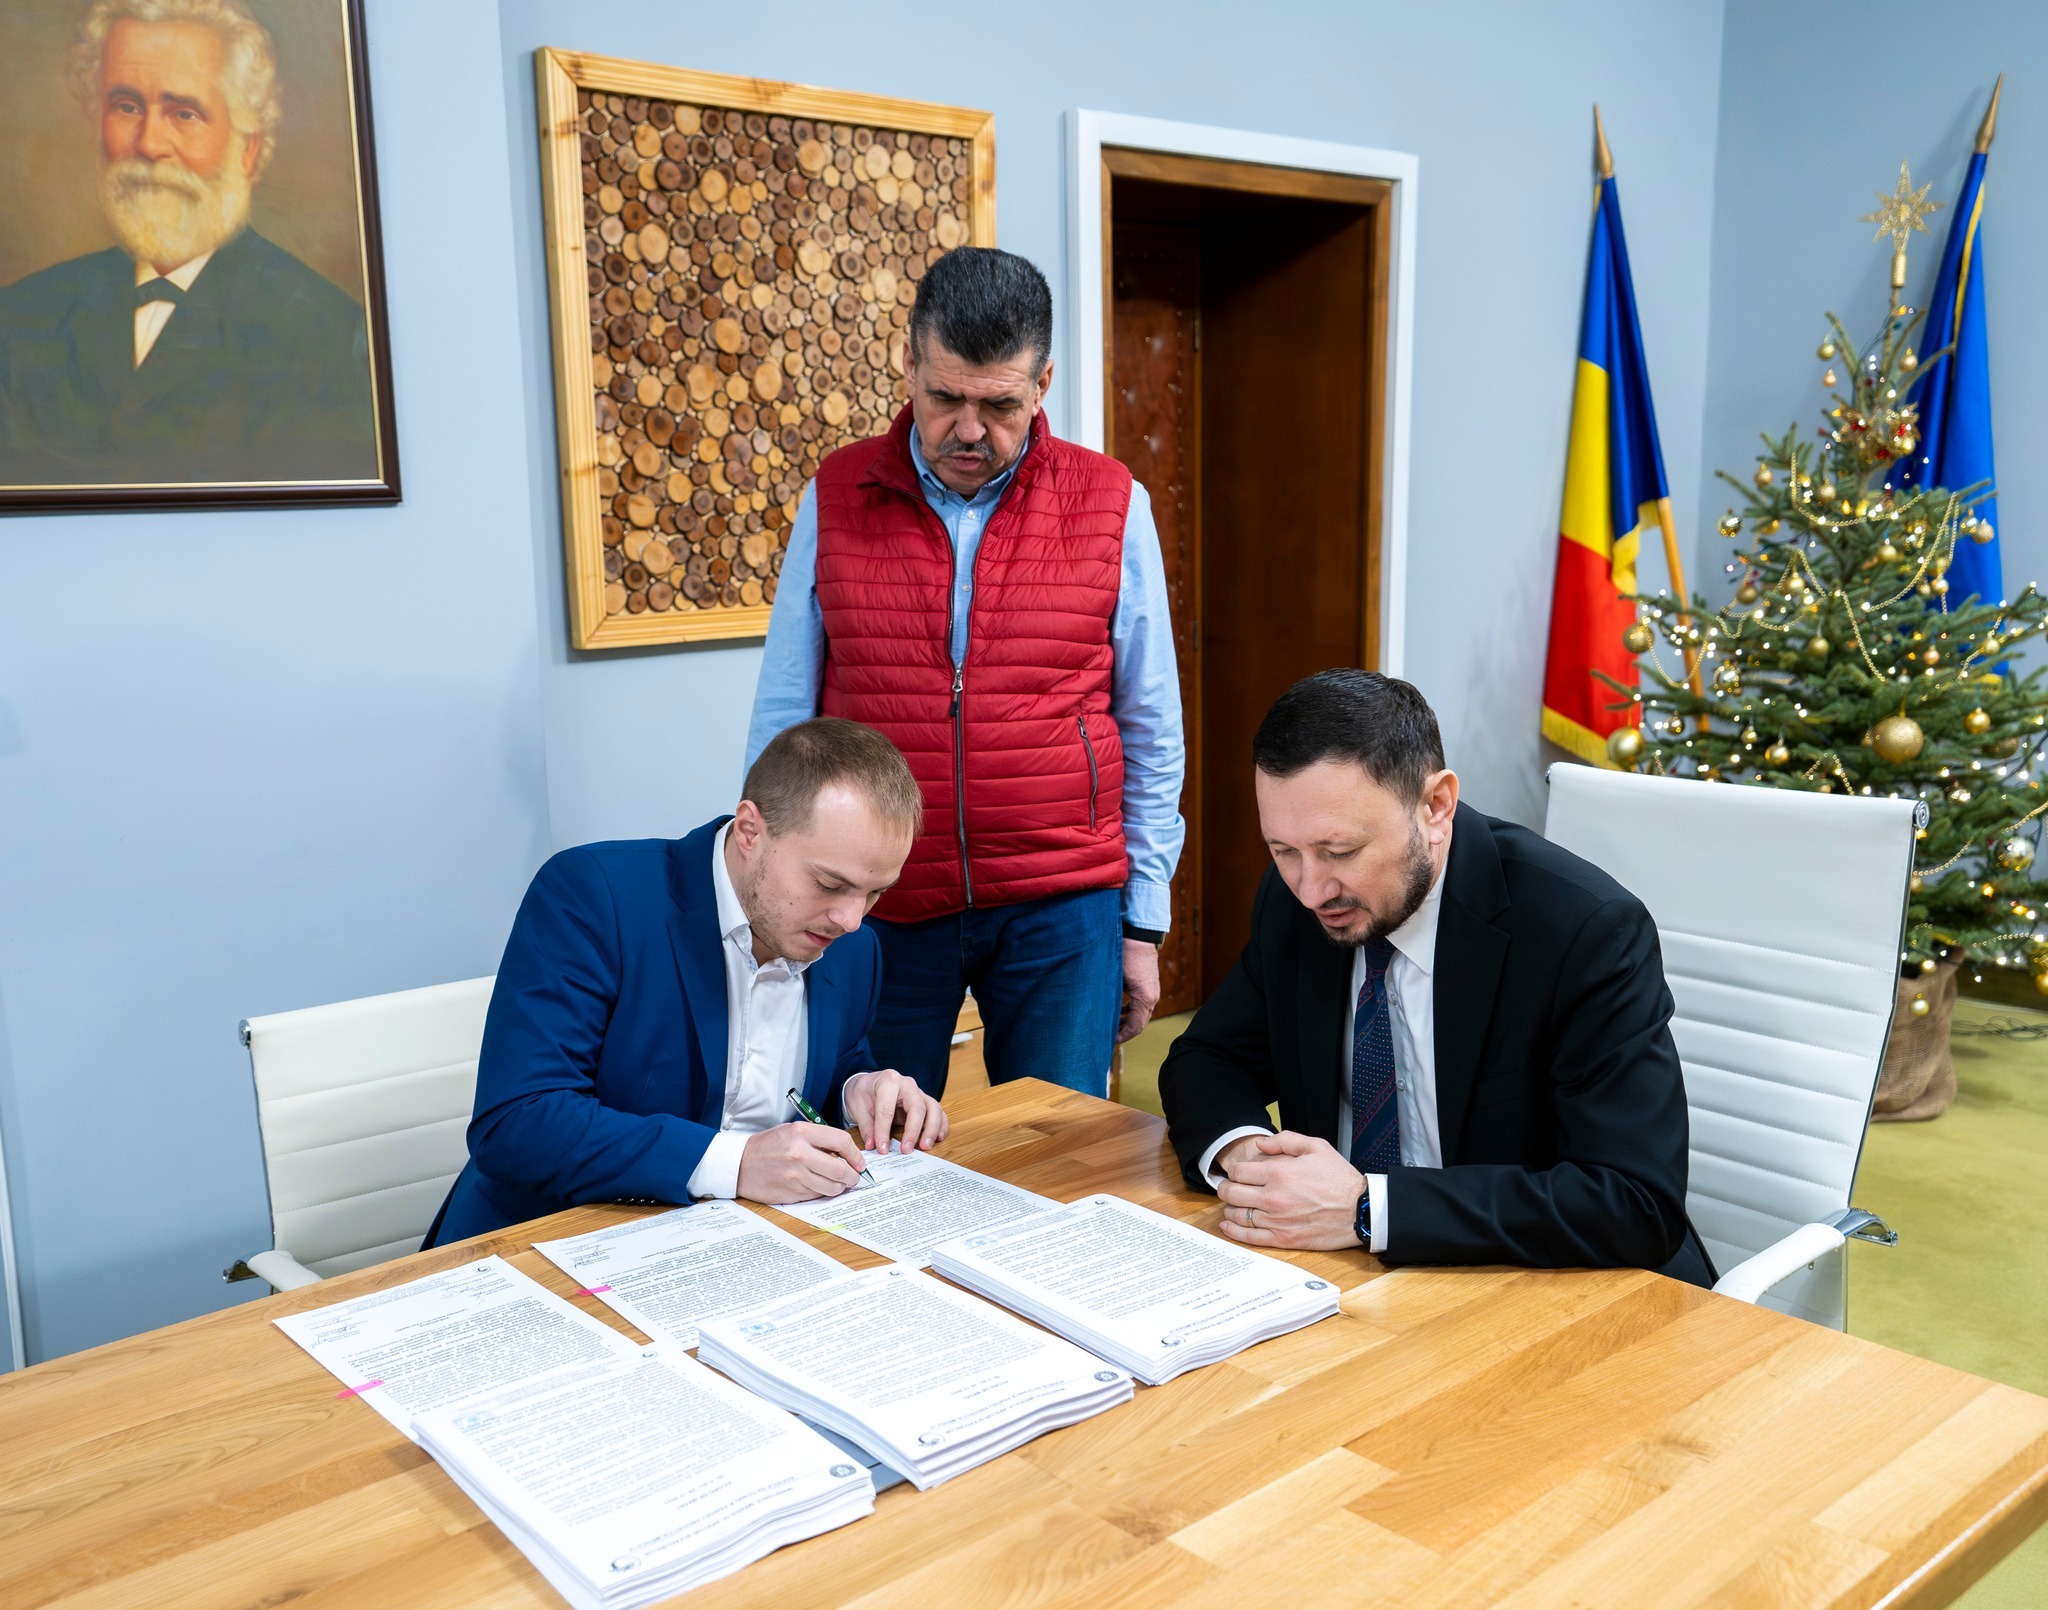 A fost semnat acordul de mediu pentru autostrada Craiova-Filiaşi. Se va circula cu 130 de kilometri pe oră